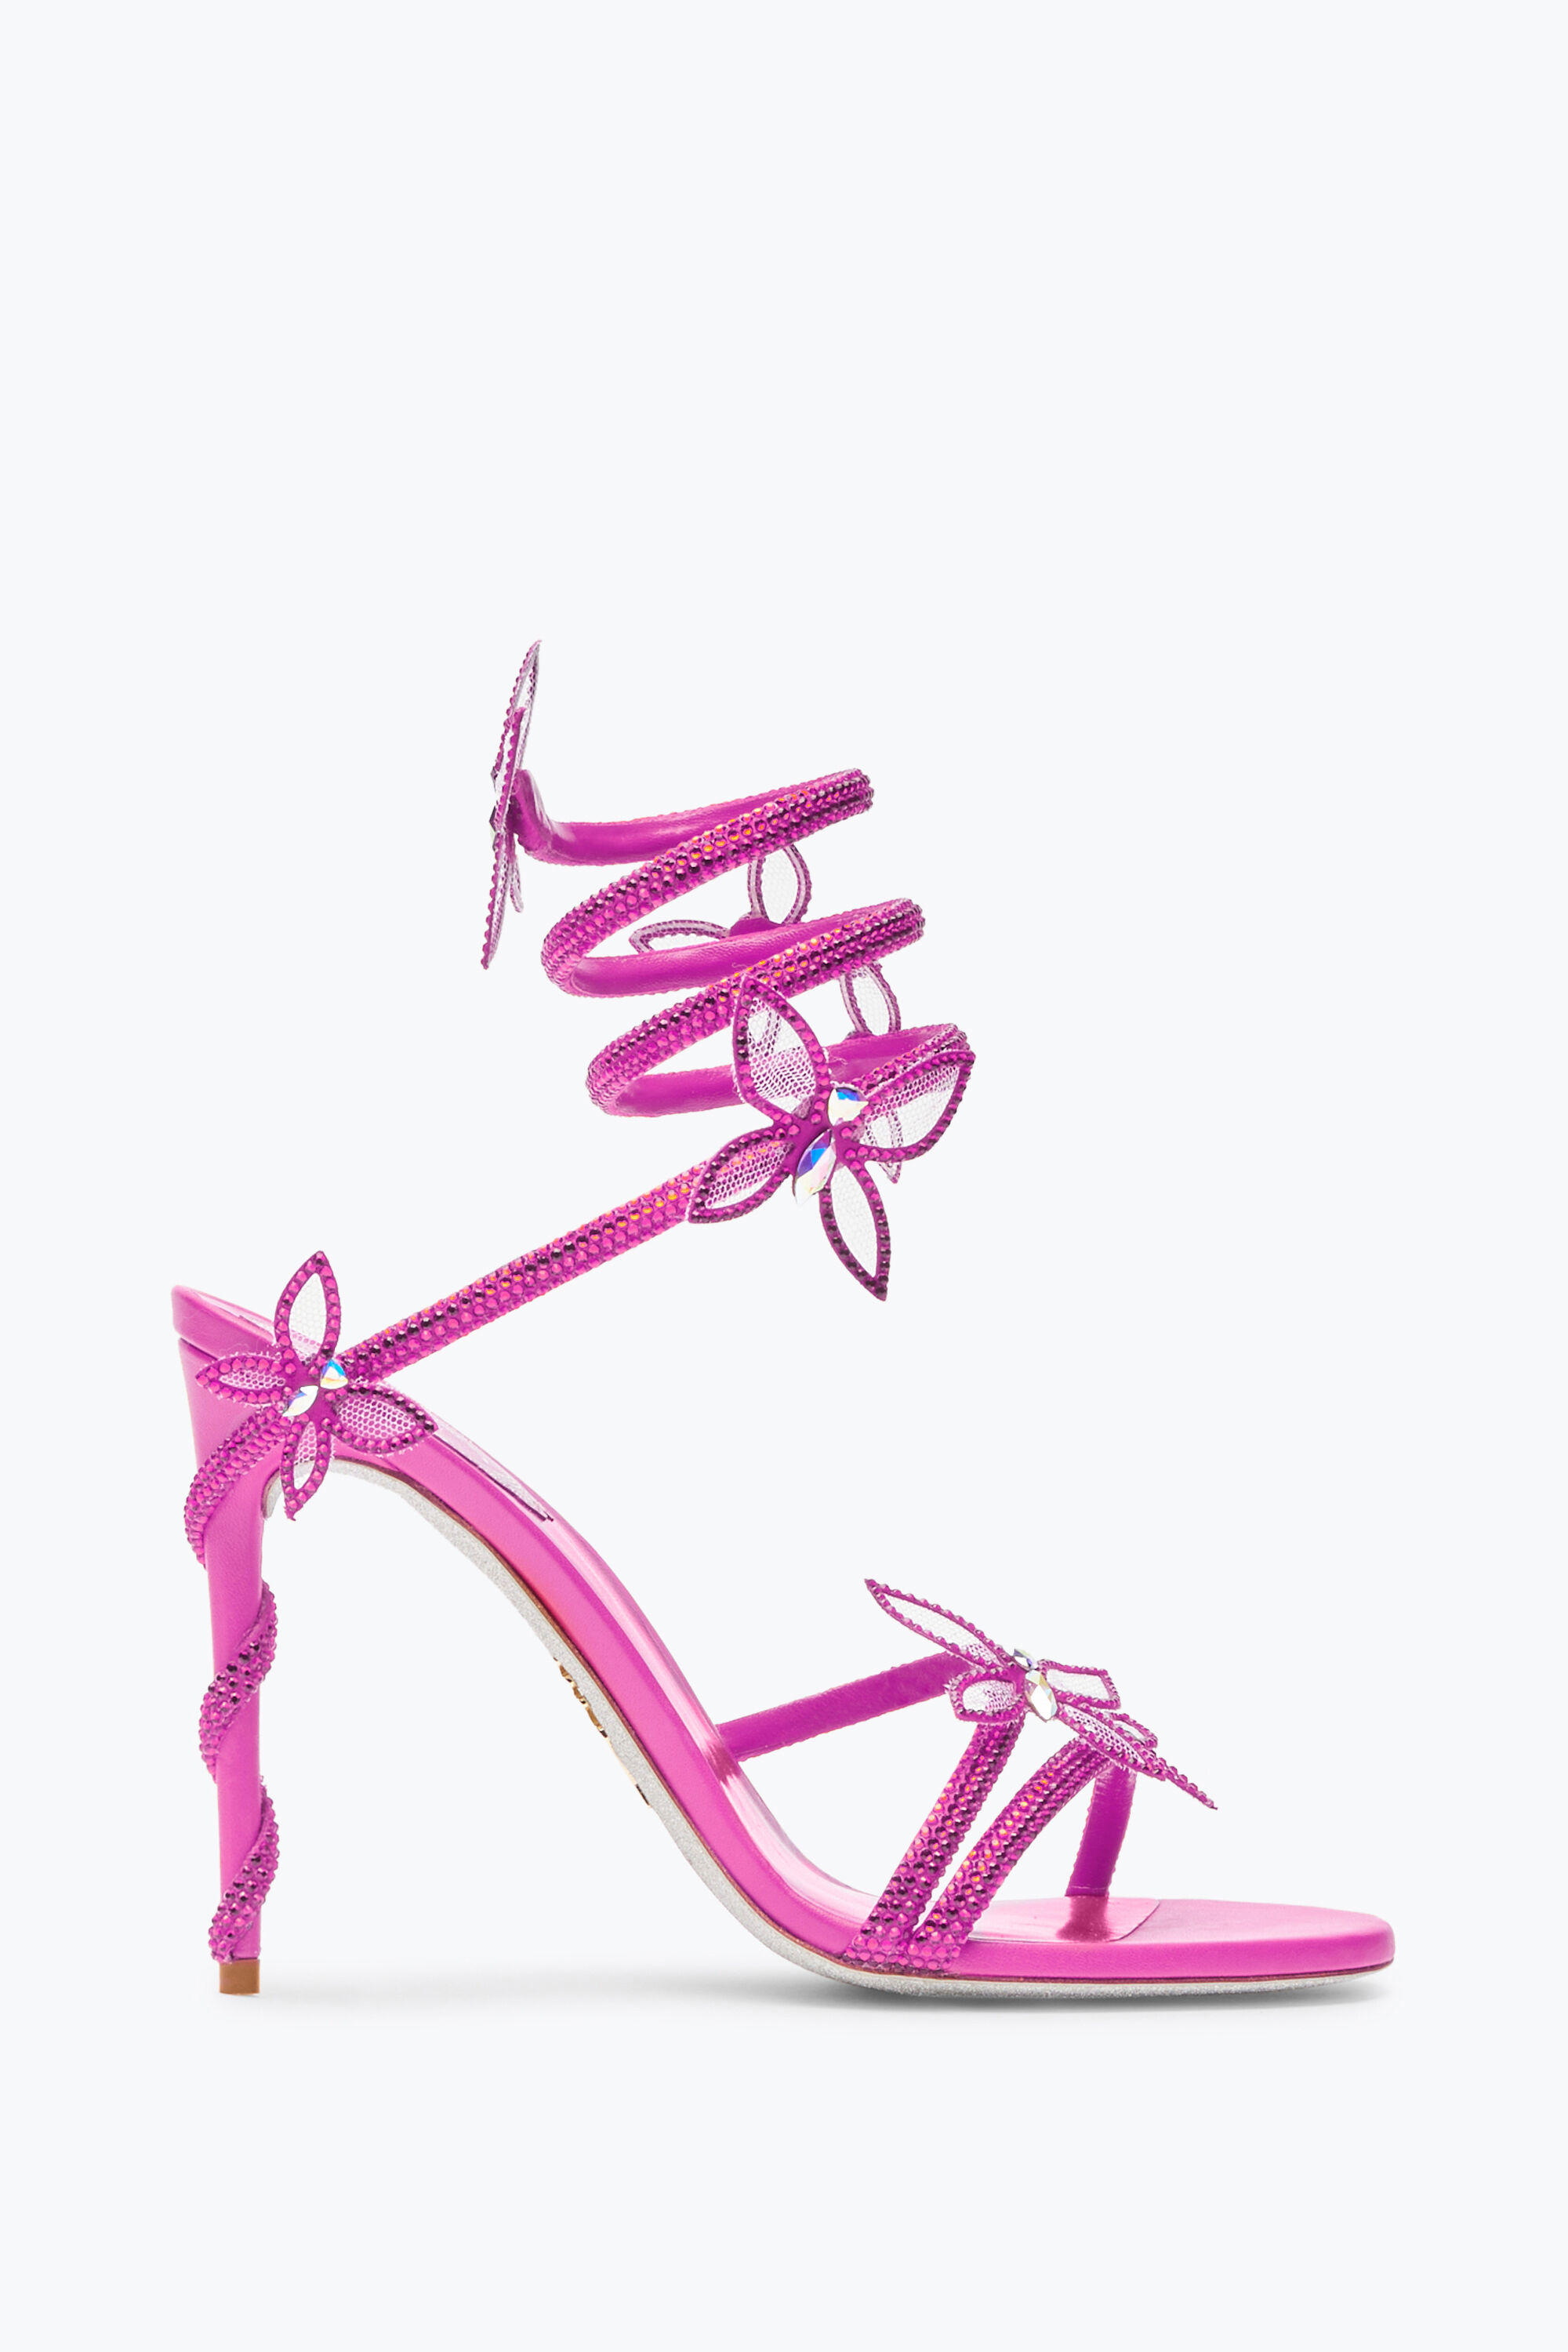 ZARA BARBIE HOT PINK CRYSTAL BOW EMBELLISHED BOW HIGH HEELED SANDALS 38 |  Bow high heels, Heels, High heel sandals